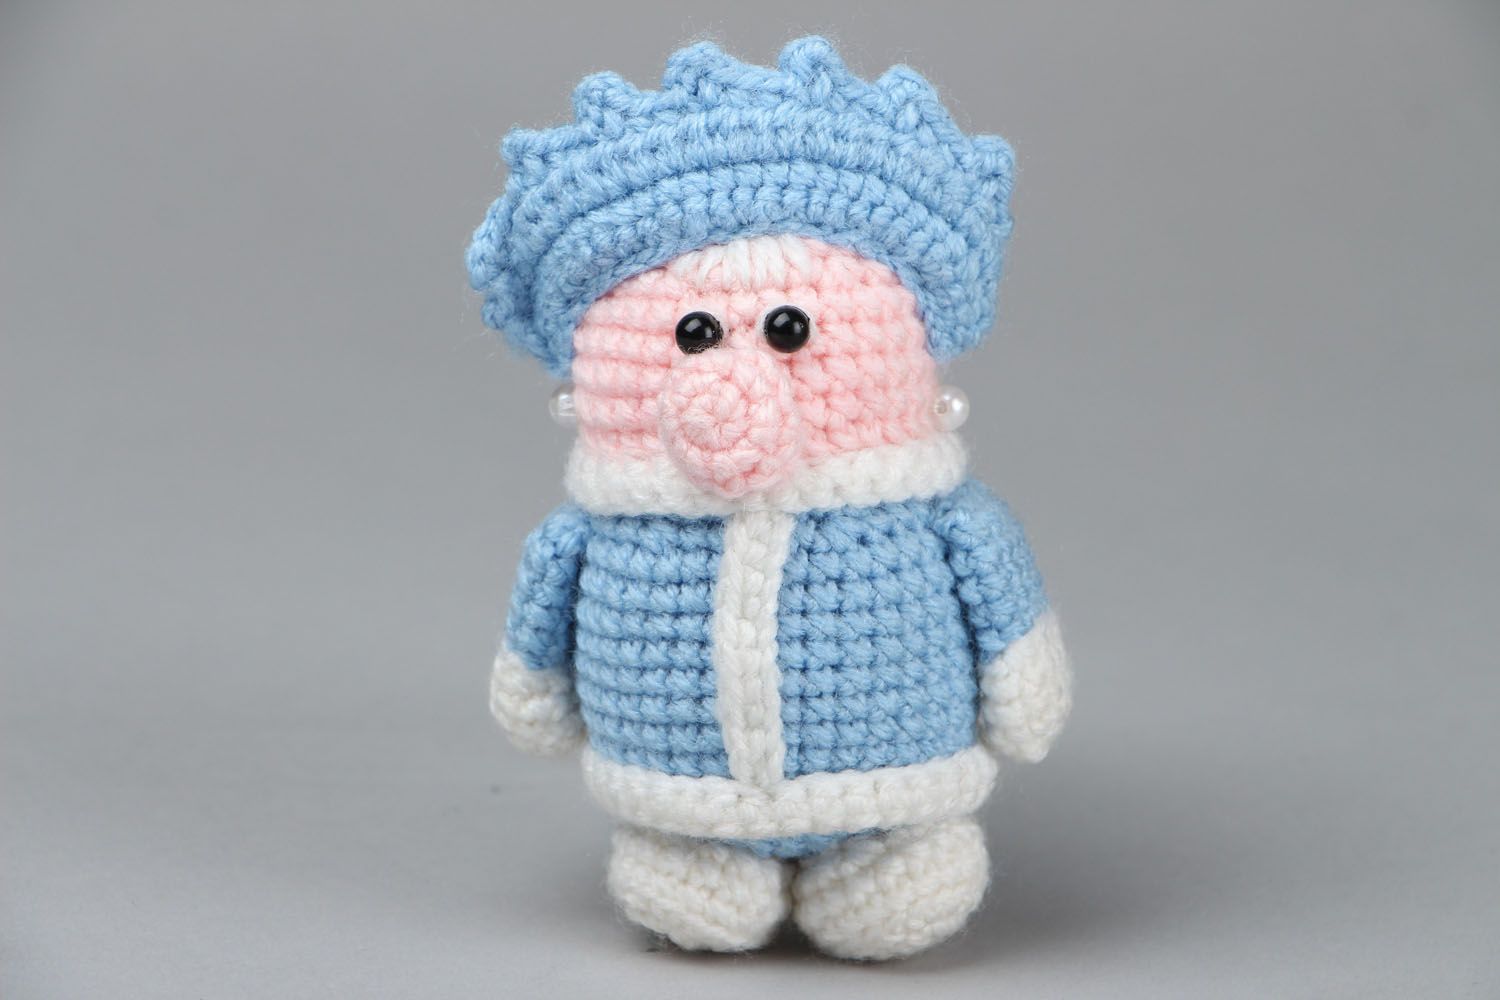 Jouet décoratif crocheté artisanal Fille des neiges photo 1